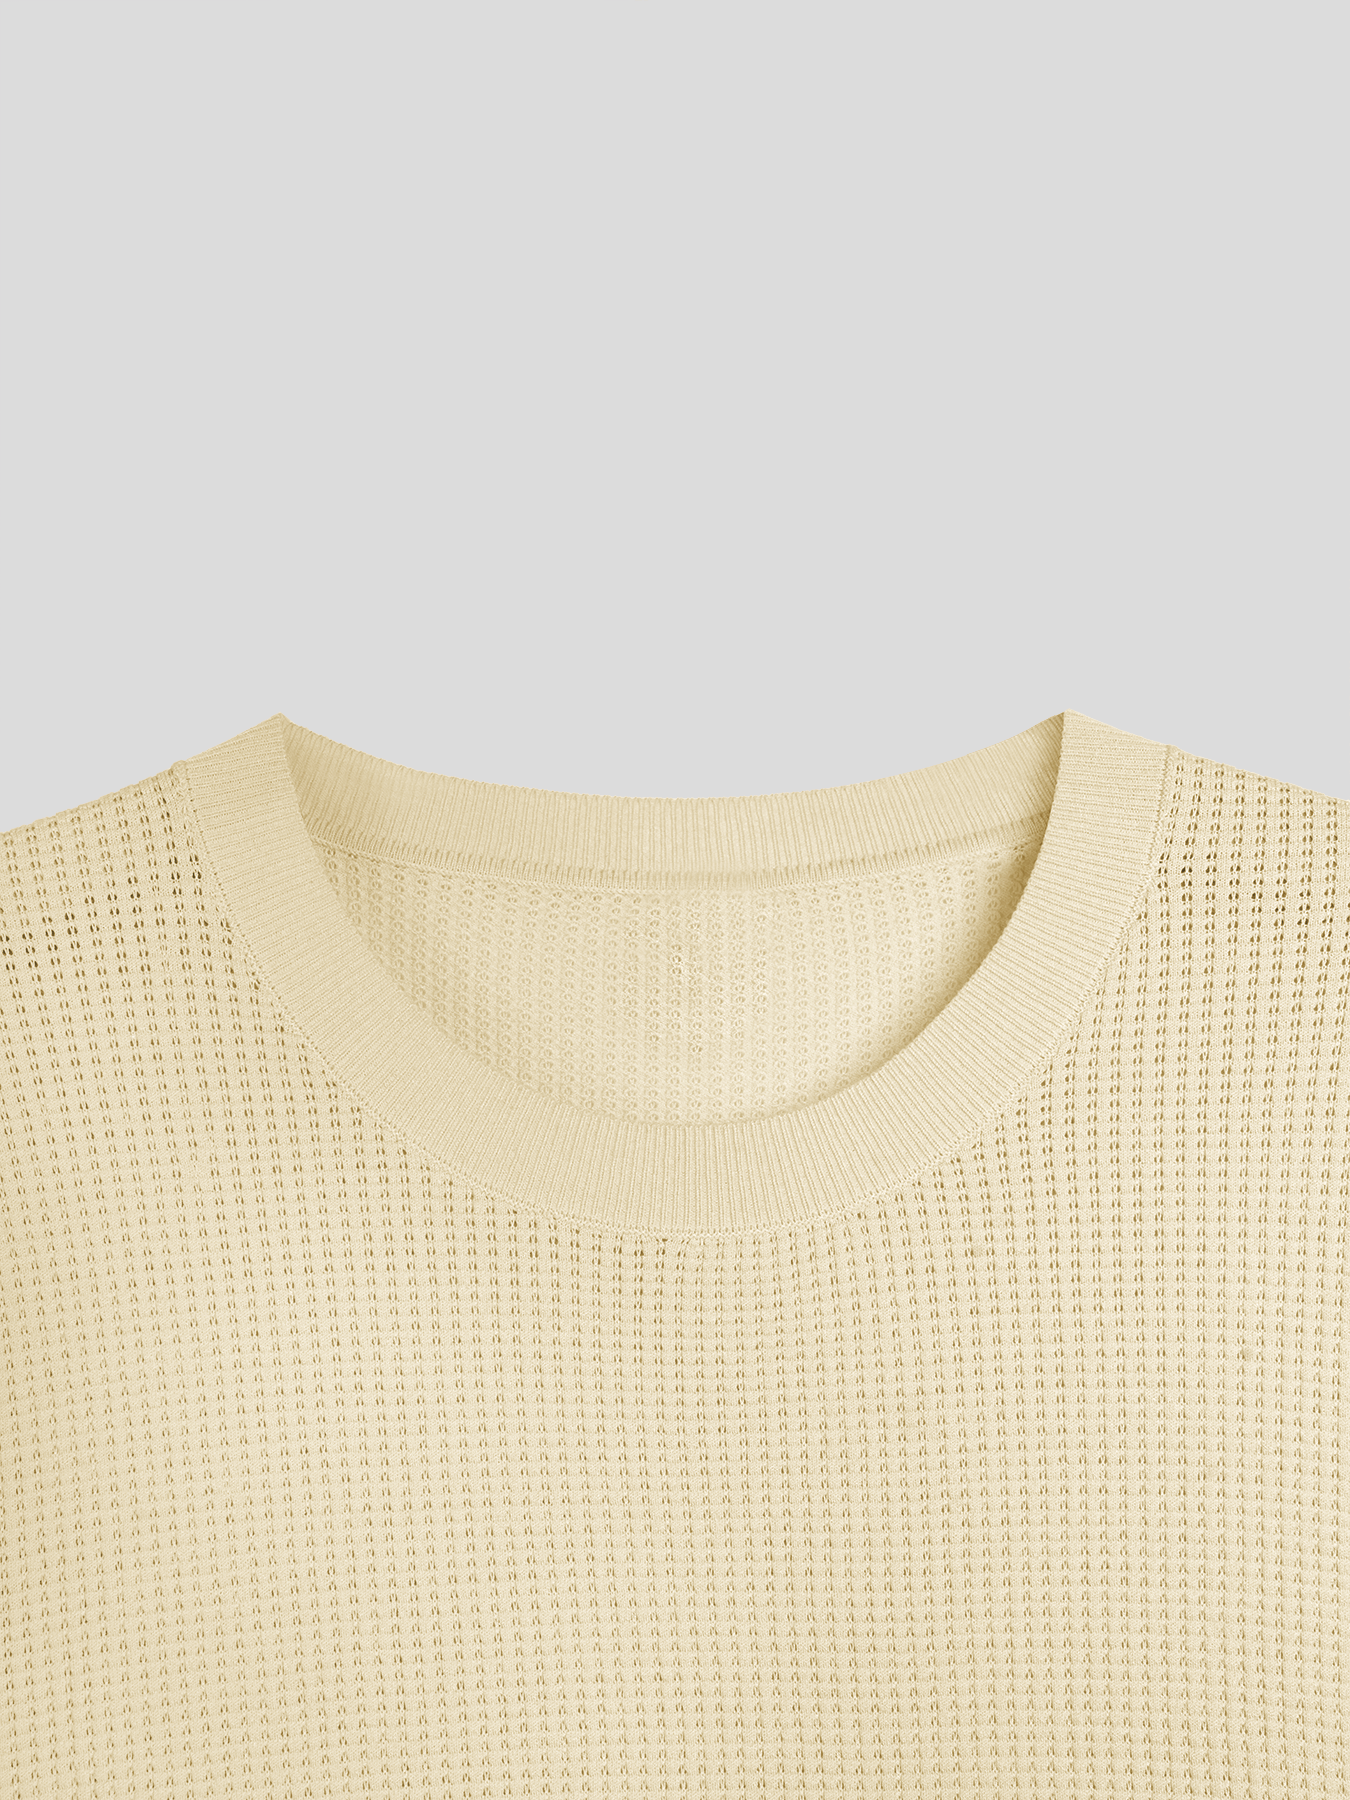 GentleKnit Honeycomb Short Sleeve Knitted T-Shirt